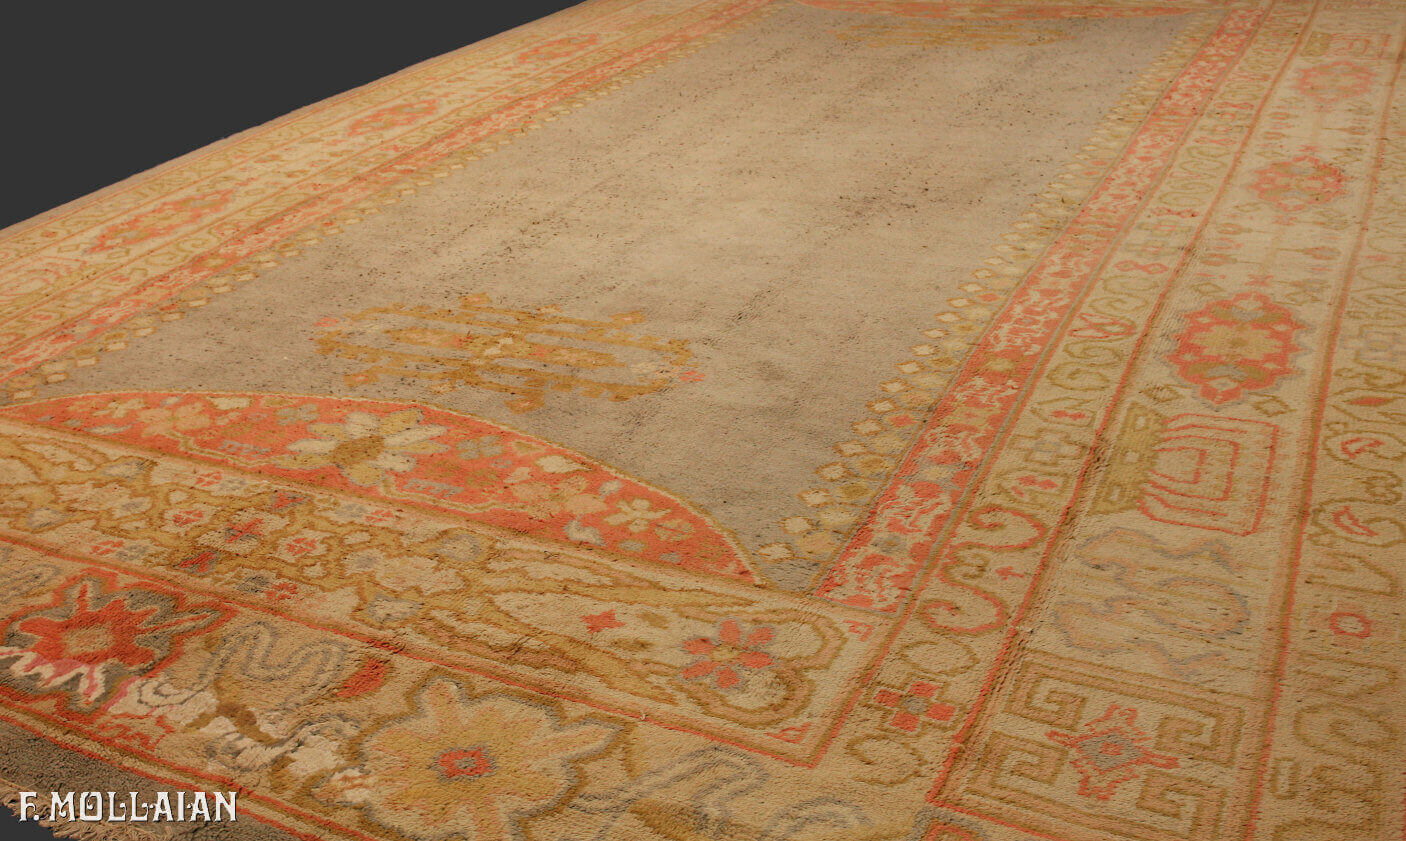 A Large Antique Turkish Izmir Carpet n°:94418618